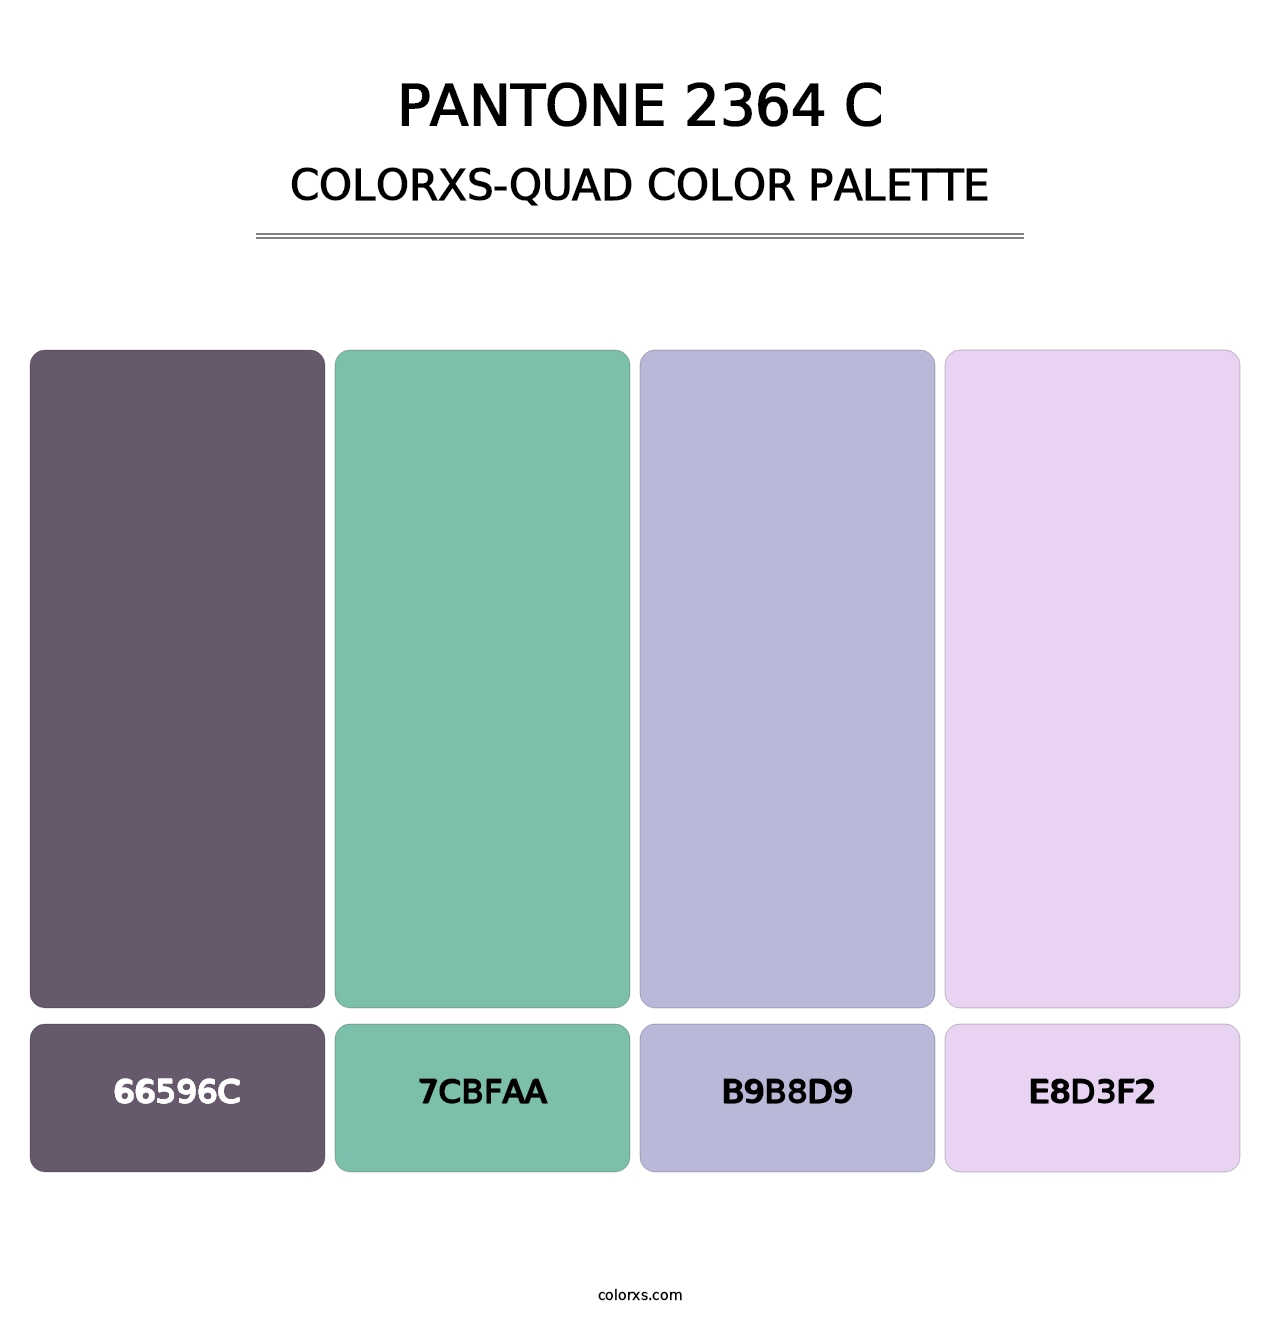 PANTONE 2364 C - Colorxs Quad Palette